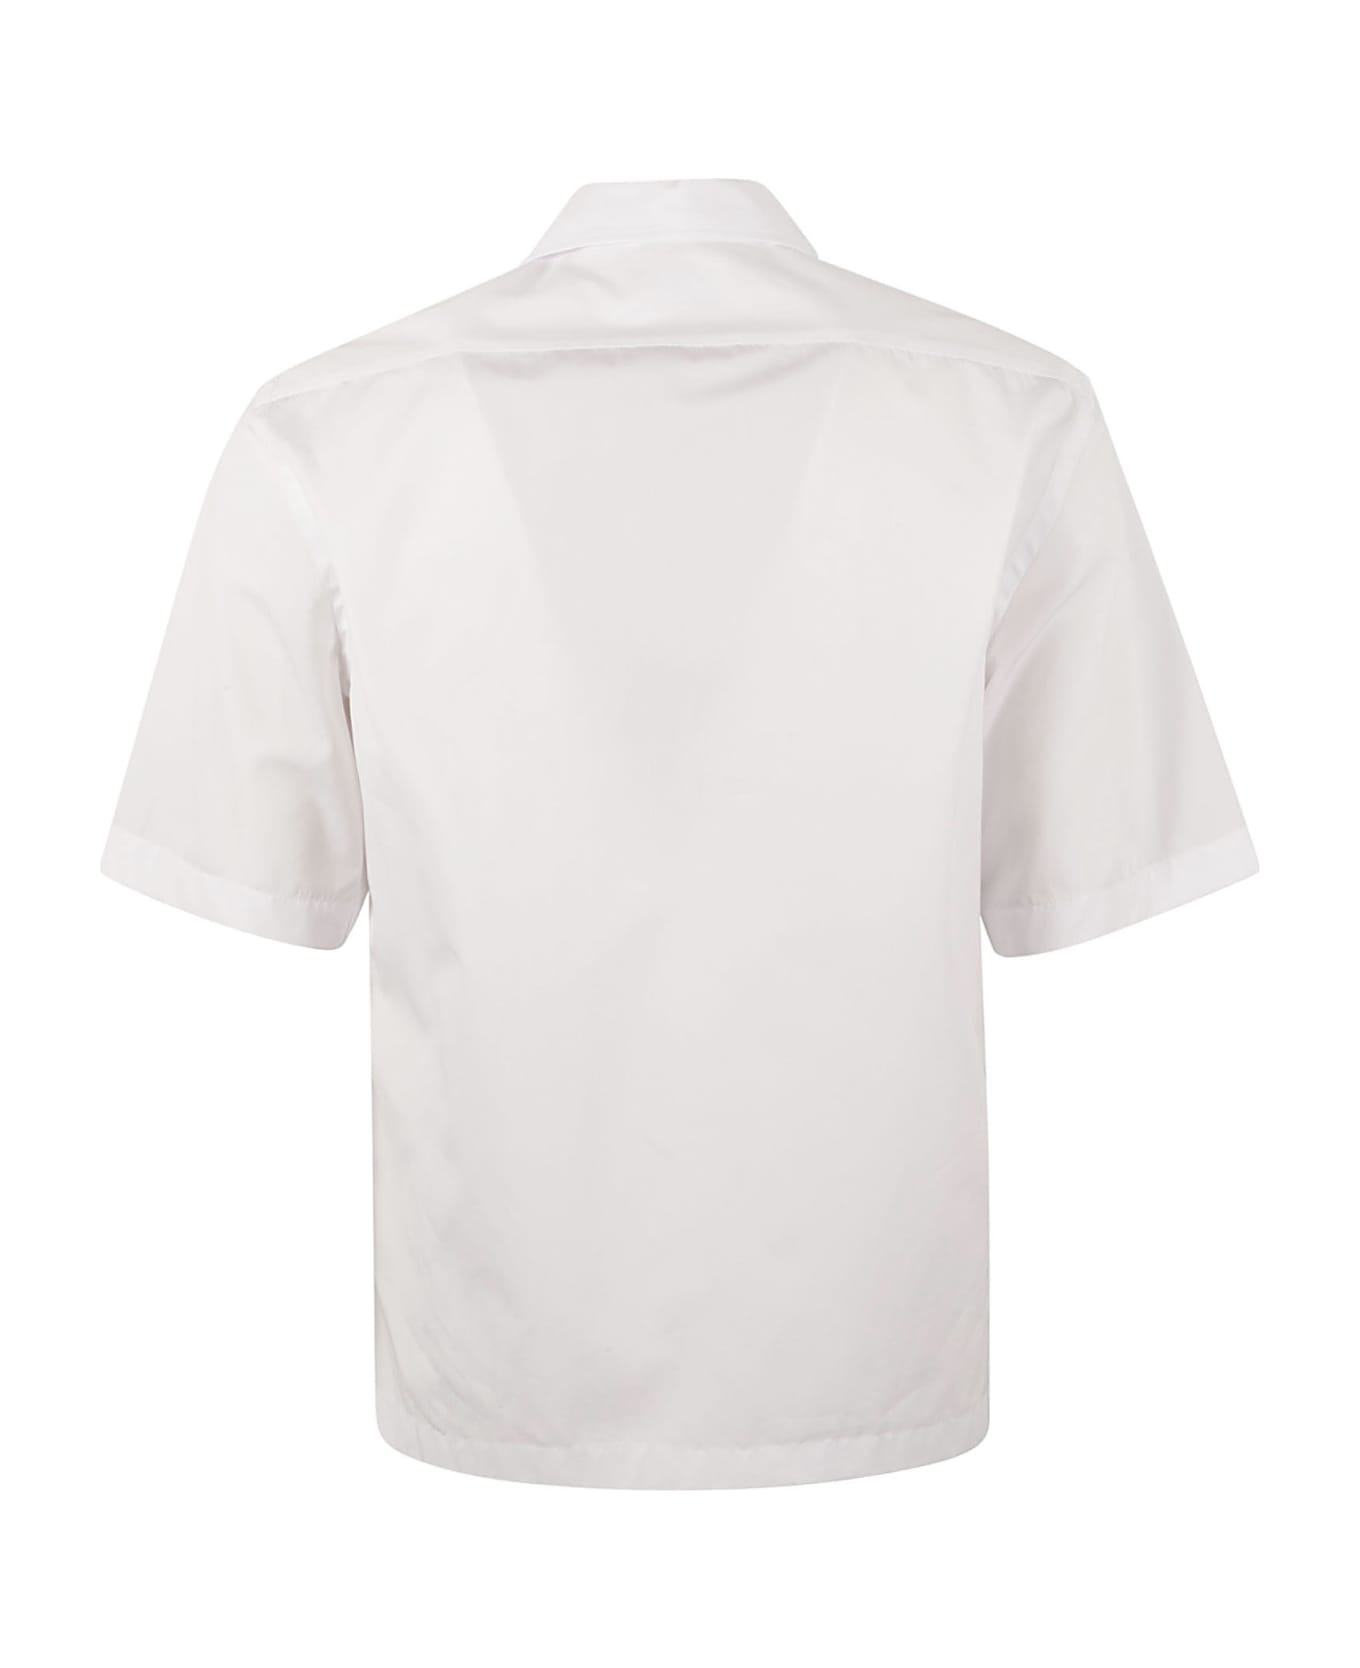 Lardini Pocket Shirt - Bianco シャツ